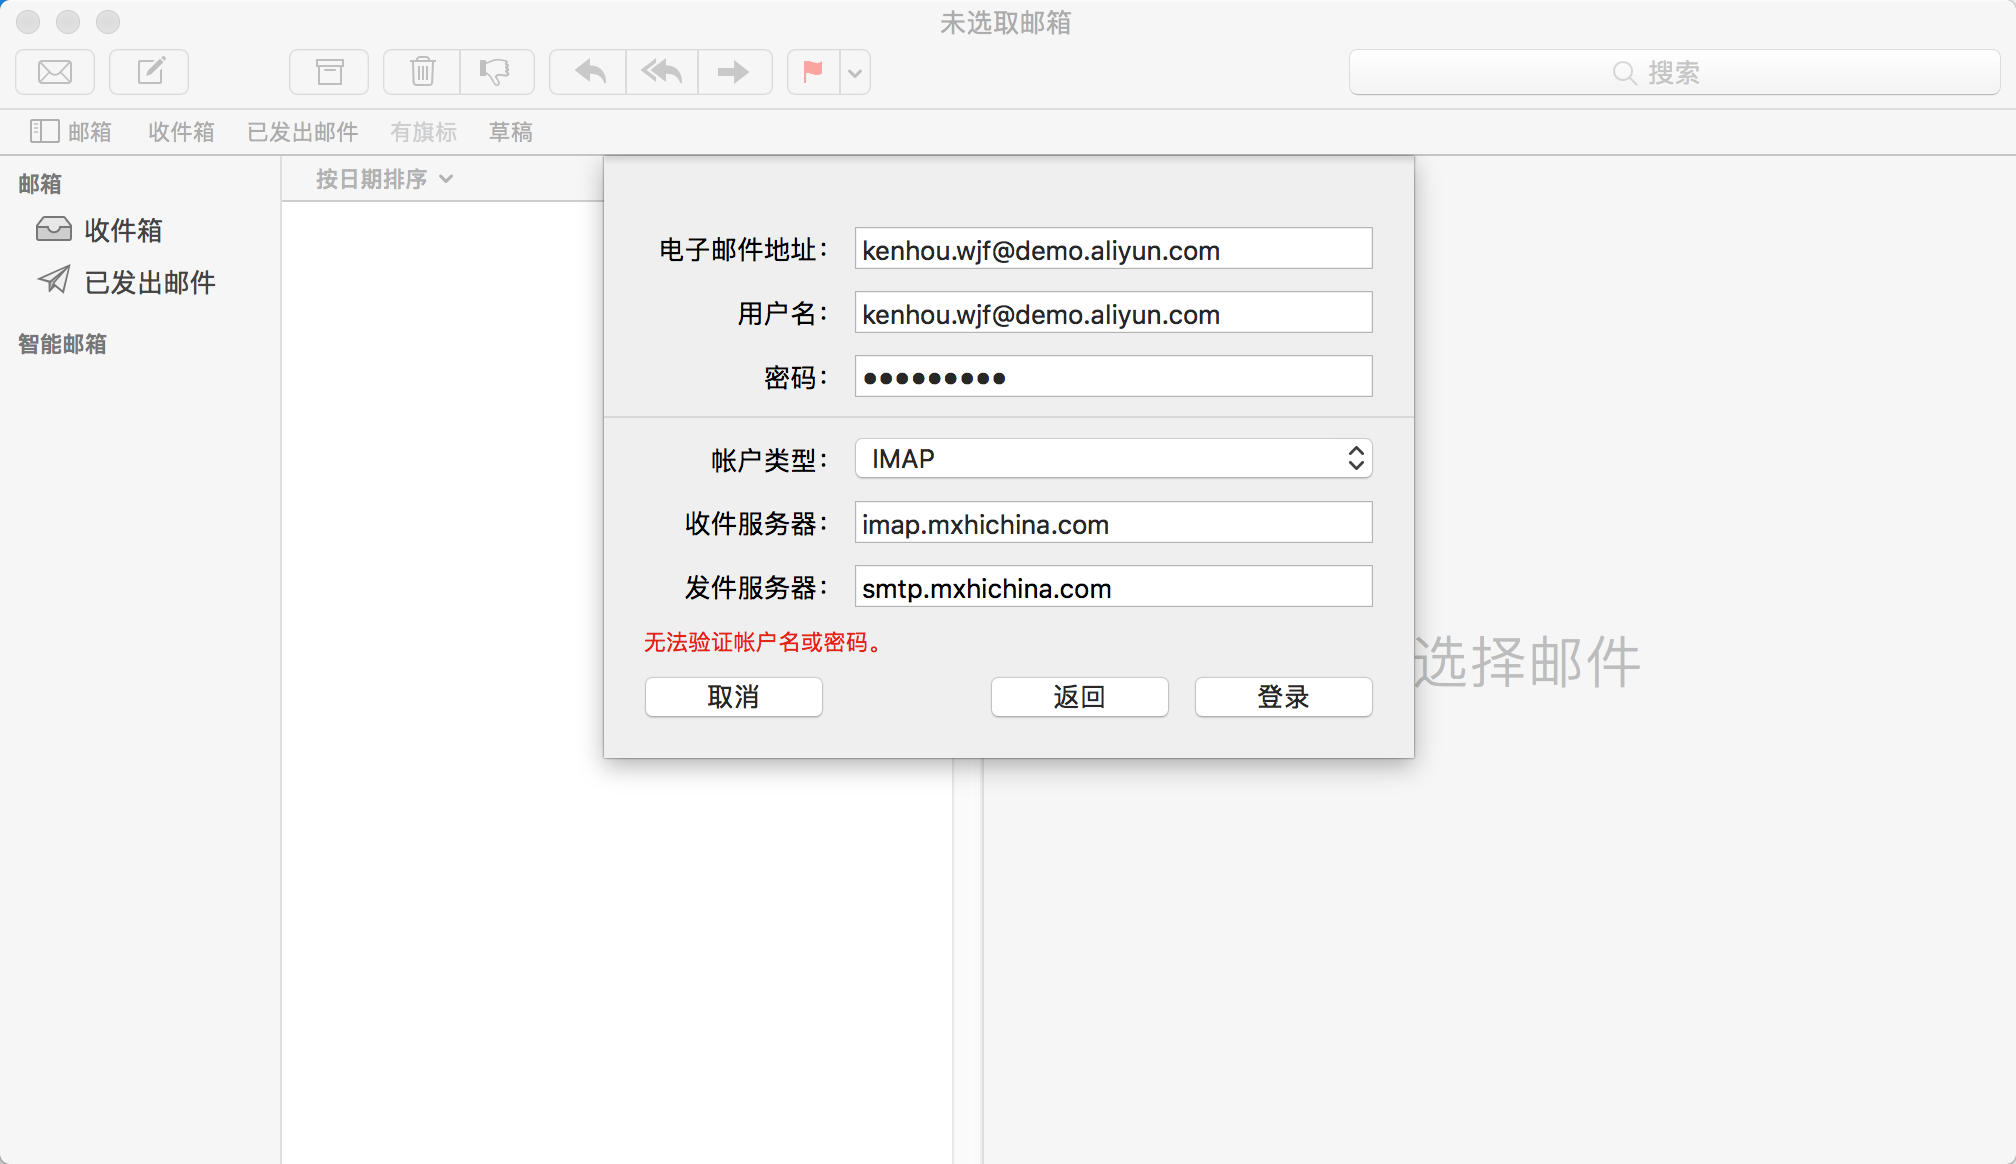 阿里云企业邮箱在MAC OS（苹果）上POP3/IMAP协议设置方法